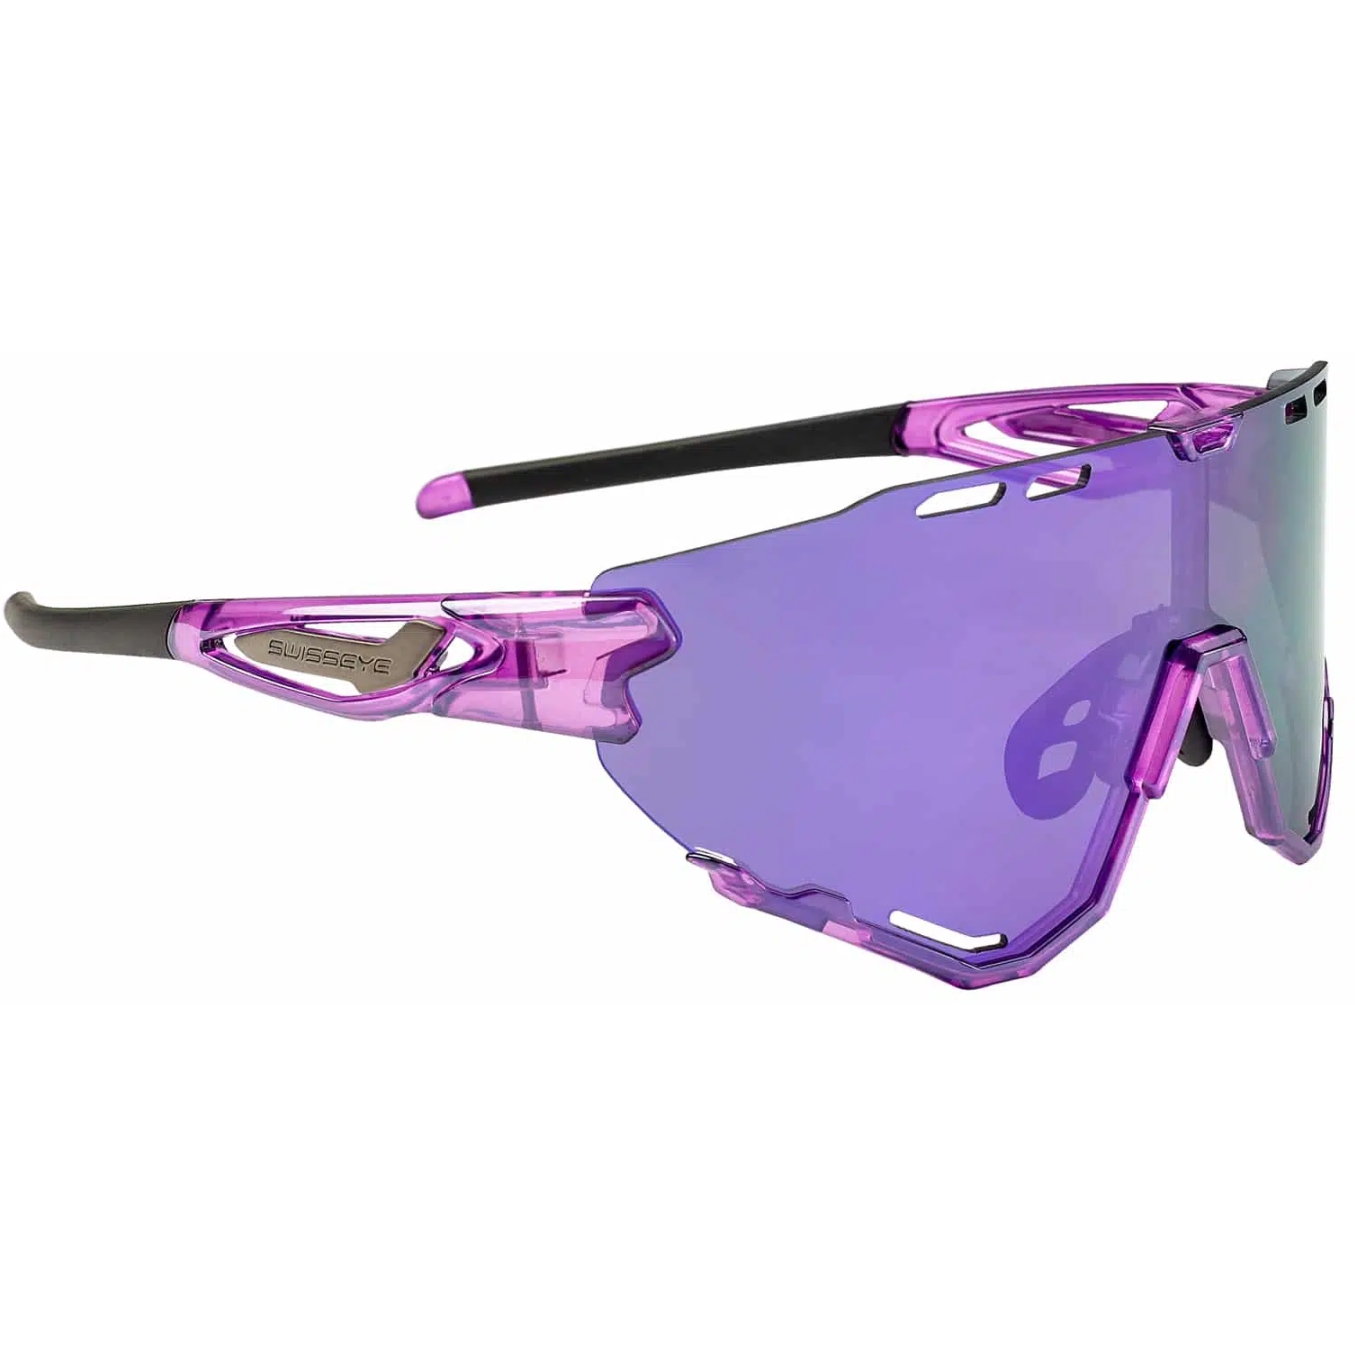 Produktbild von Swiss Eye Mantra Brille - Shiny Laser Purple - Smoke Purple Revo 13025